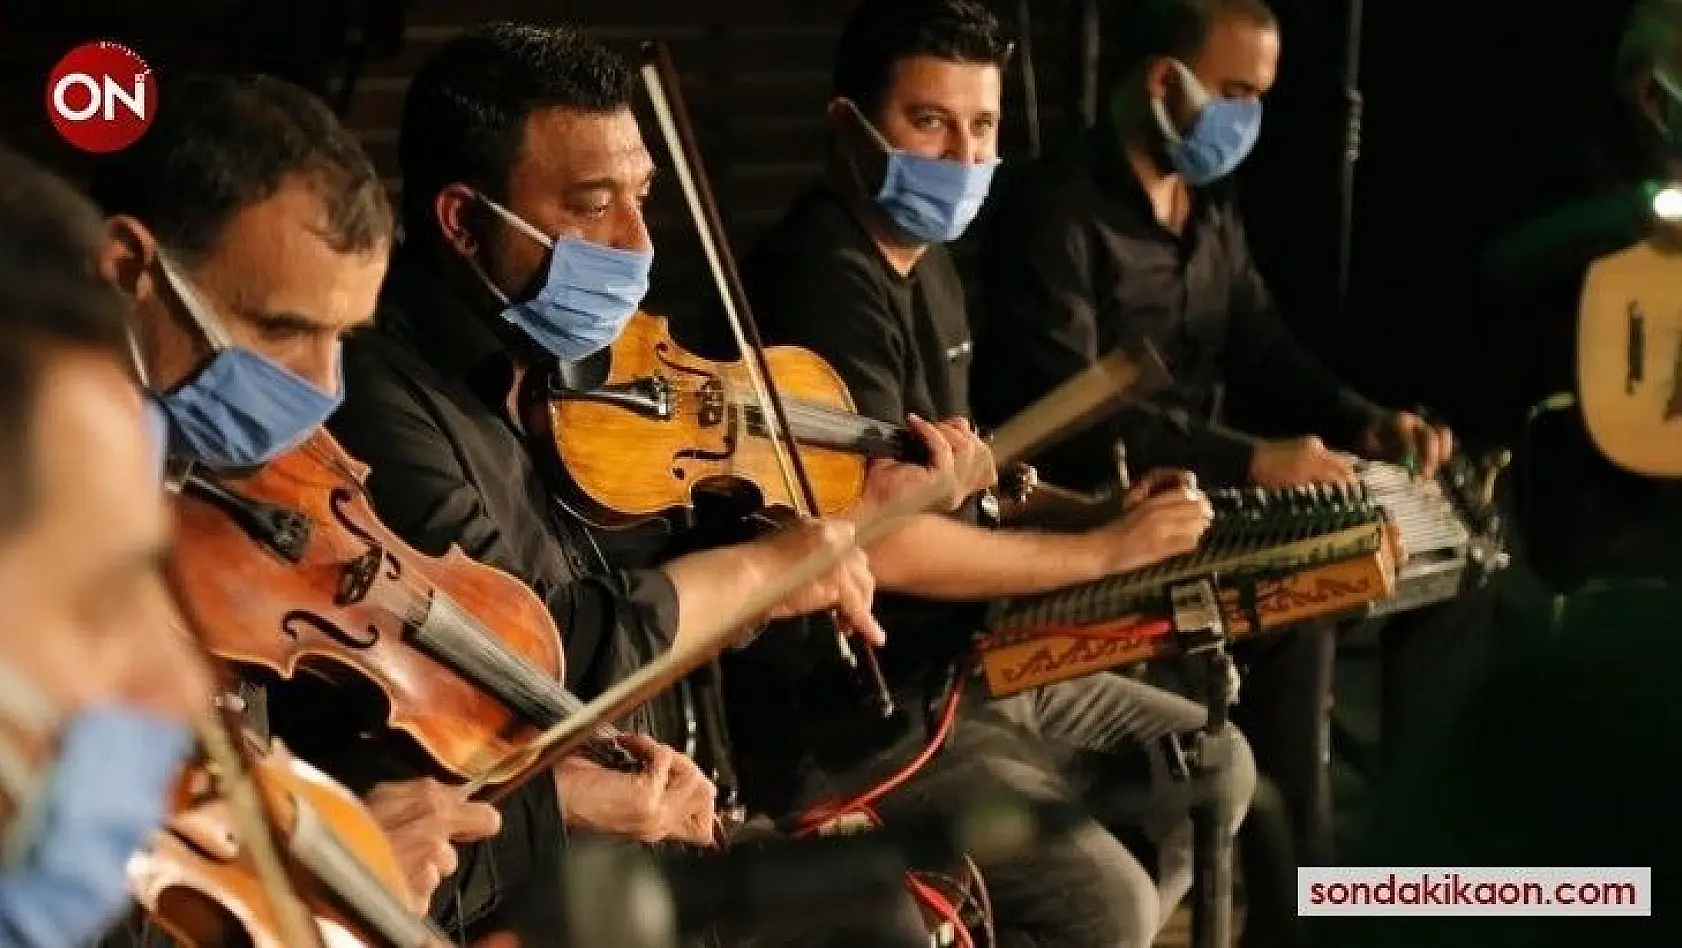 Pandemiden olumsuz etkilenen Roman müzisyenler belediyede istihdam edilecek